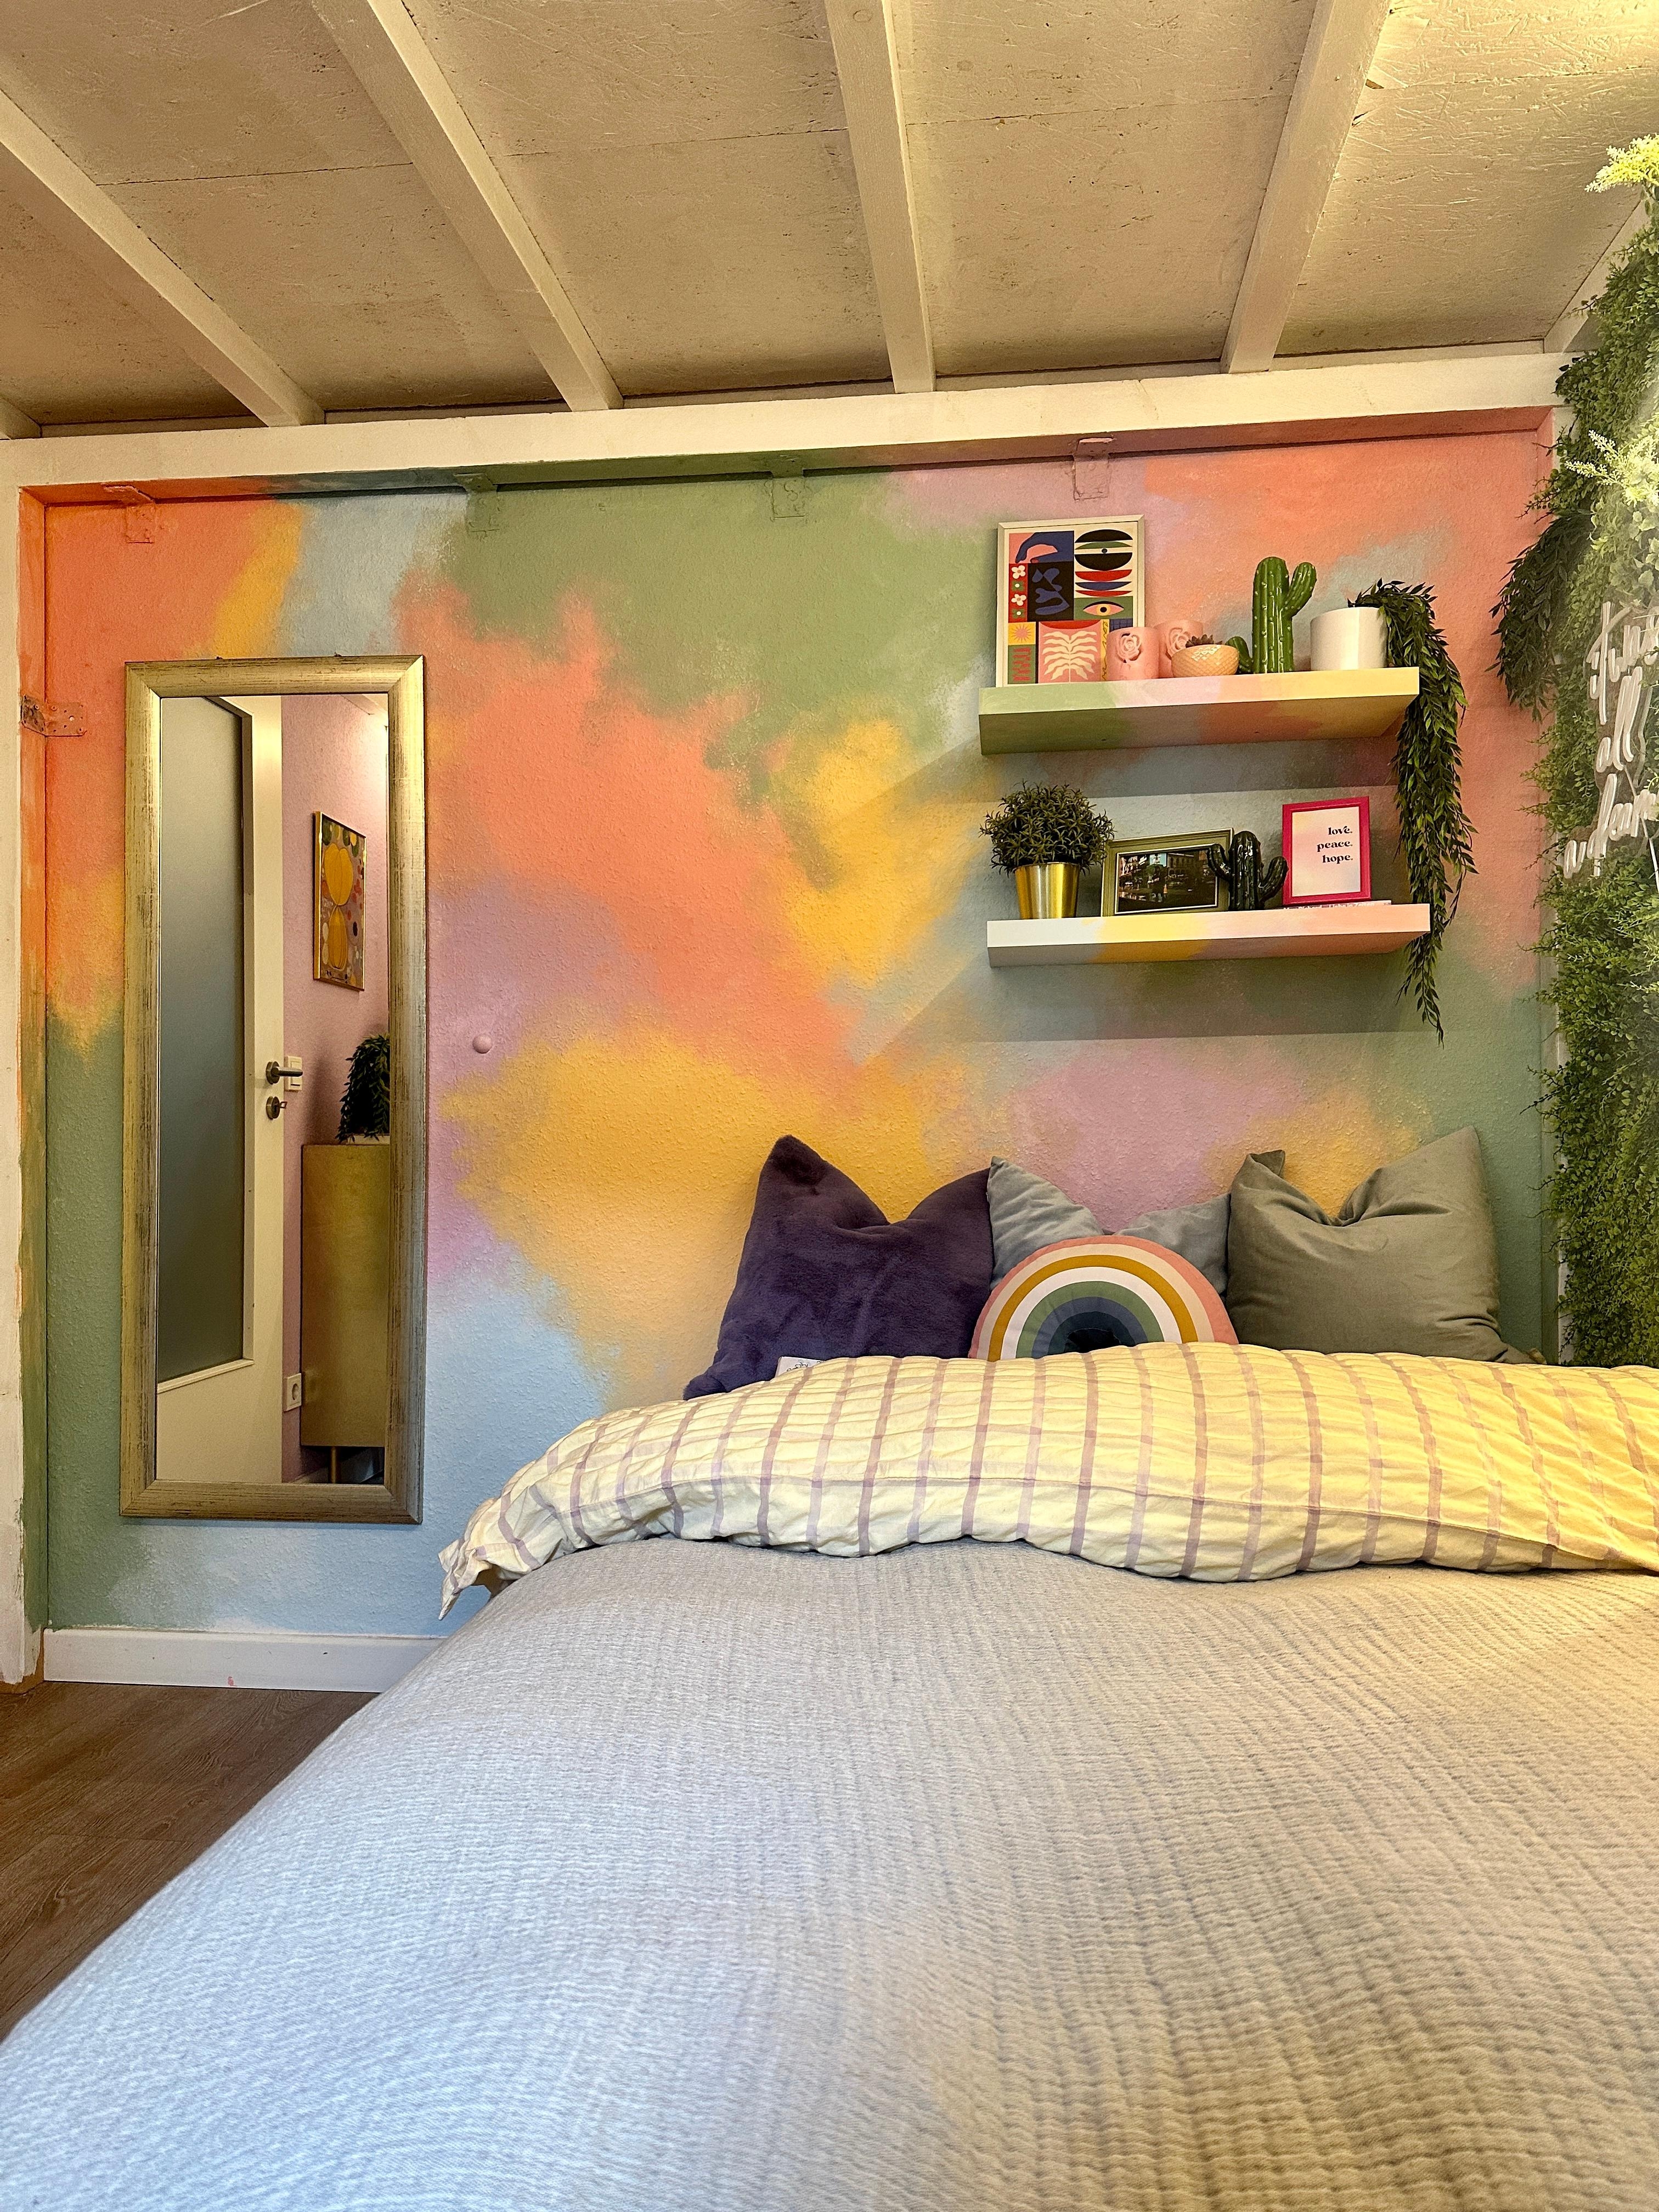 Mein pastelliges Schlafzimmer 😍💜💐 #schlafzimmer